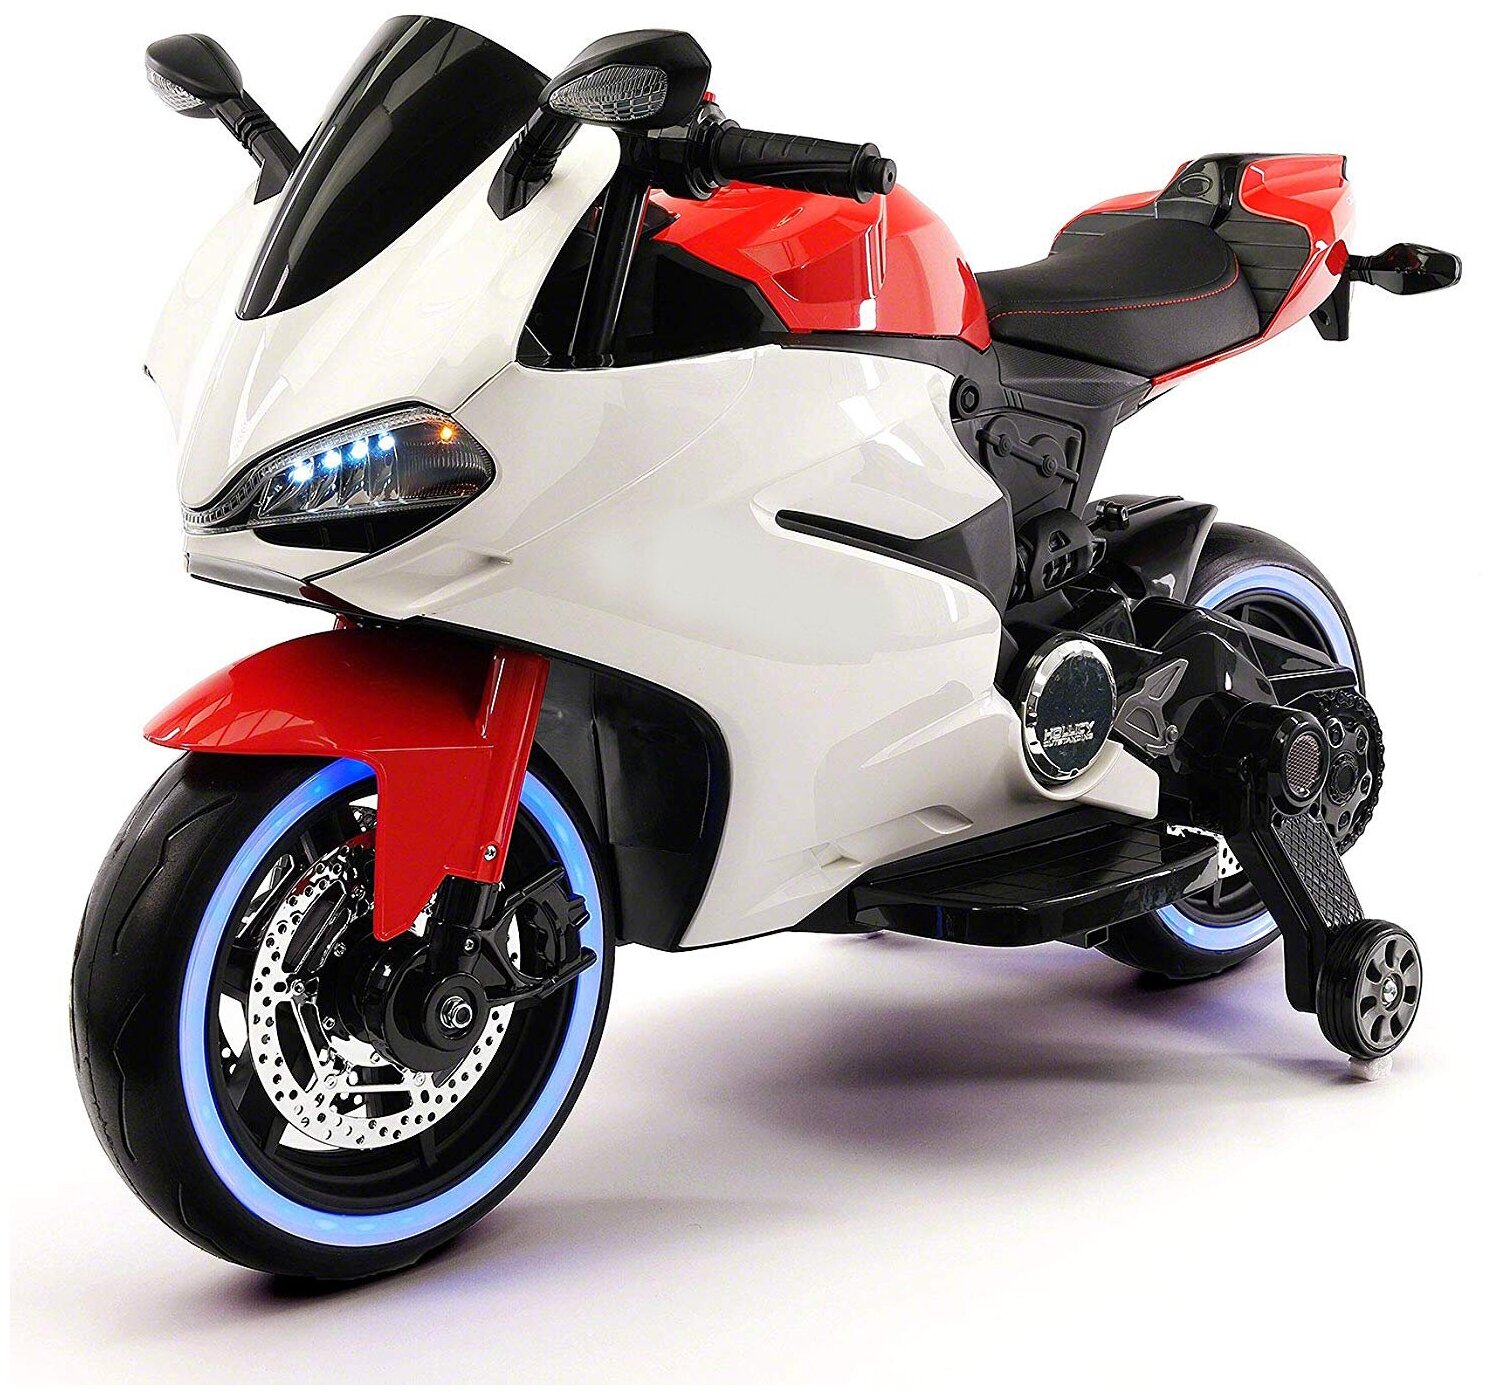 Детский электромотоцикл Ducati 12V - FT-1628-RED-WHITE